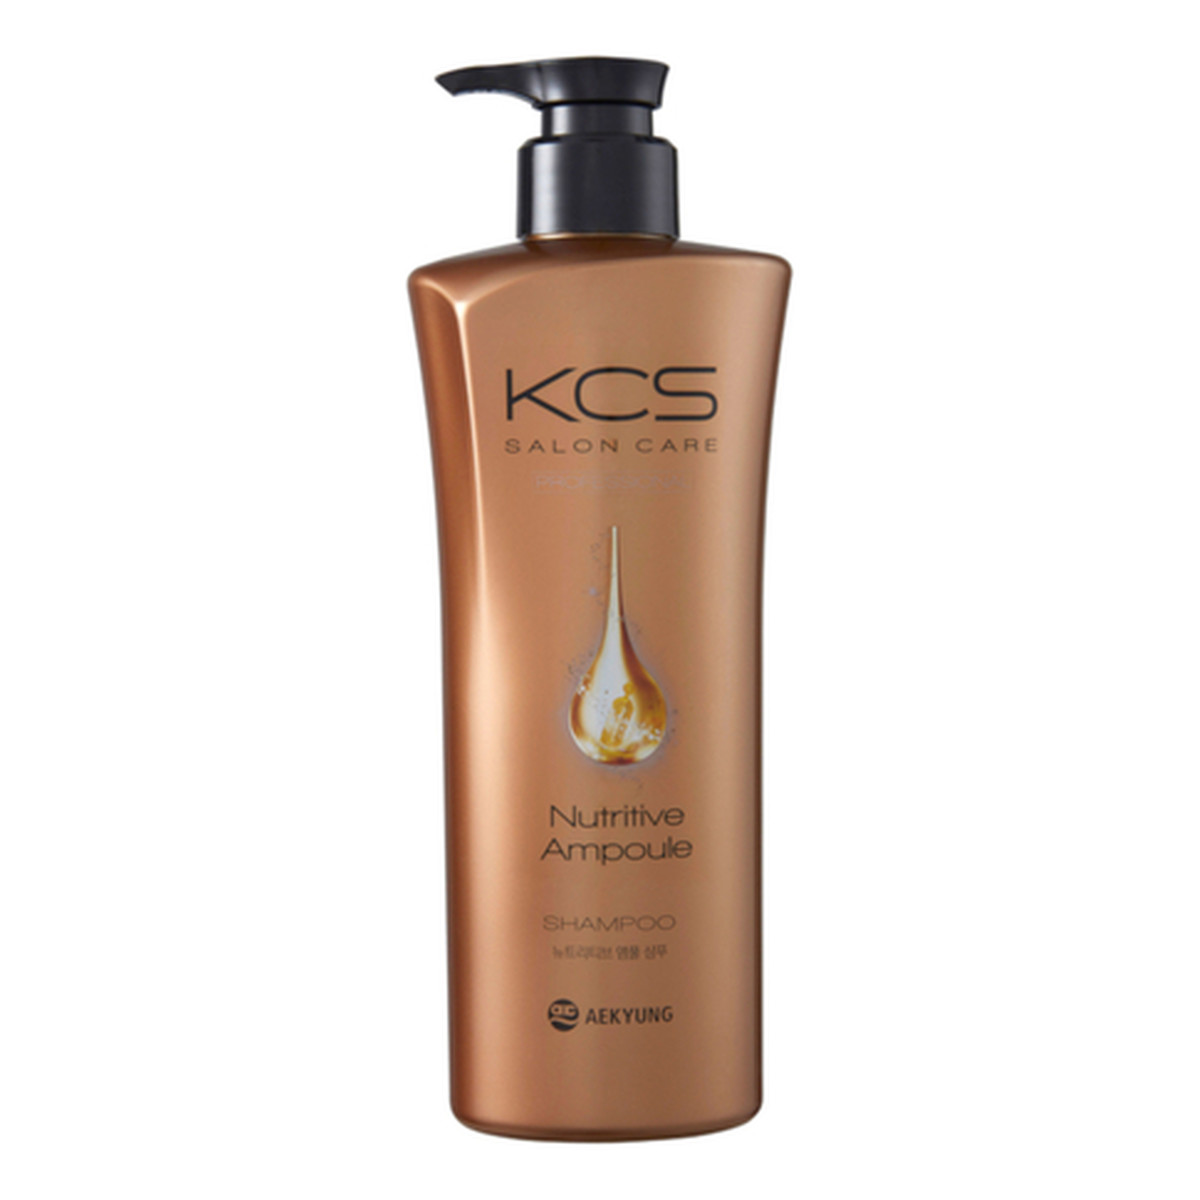 KCS Salon care nutritive ampoule shampoo odżywczy szampon do włosów zniszczonych 600ml